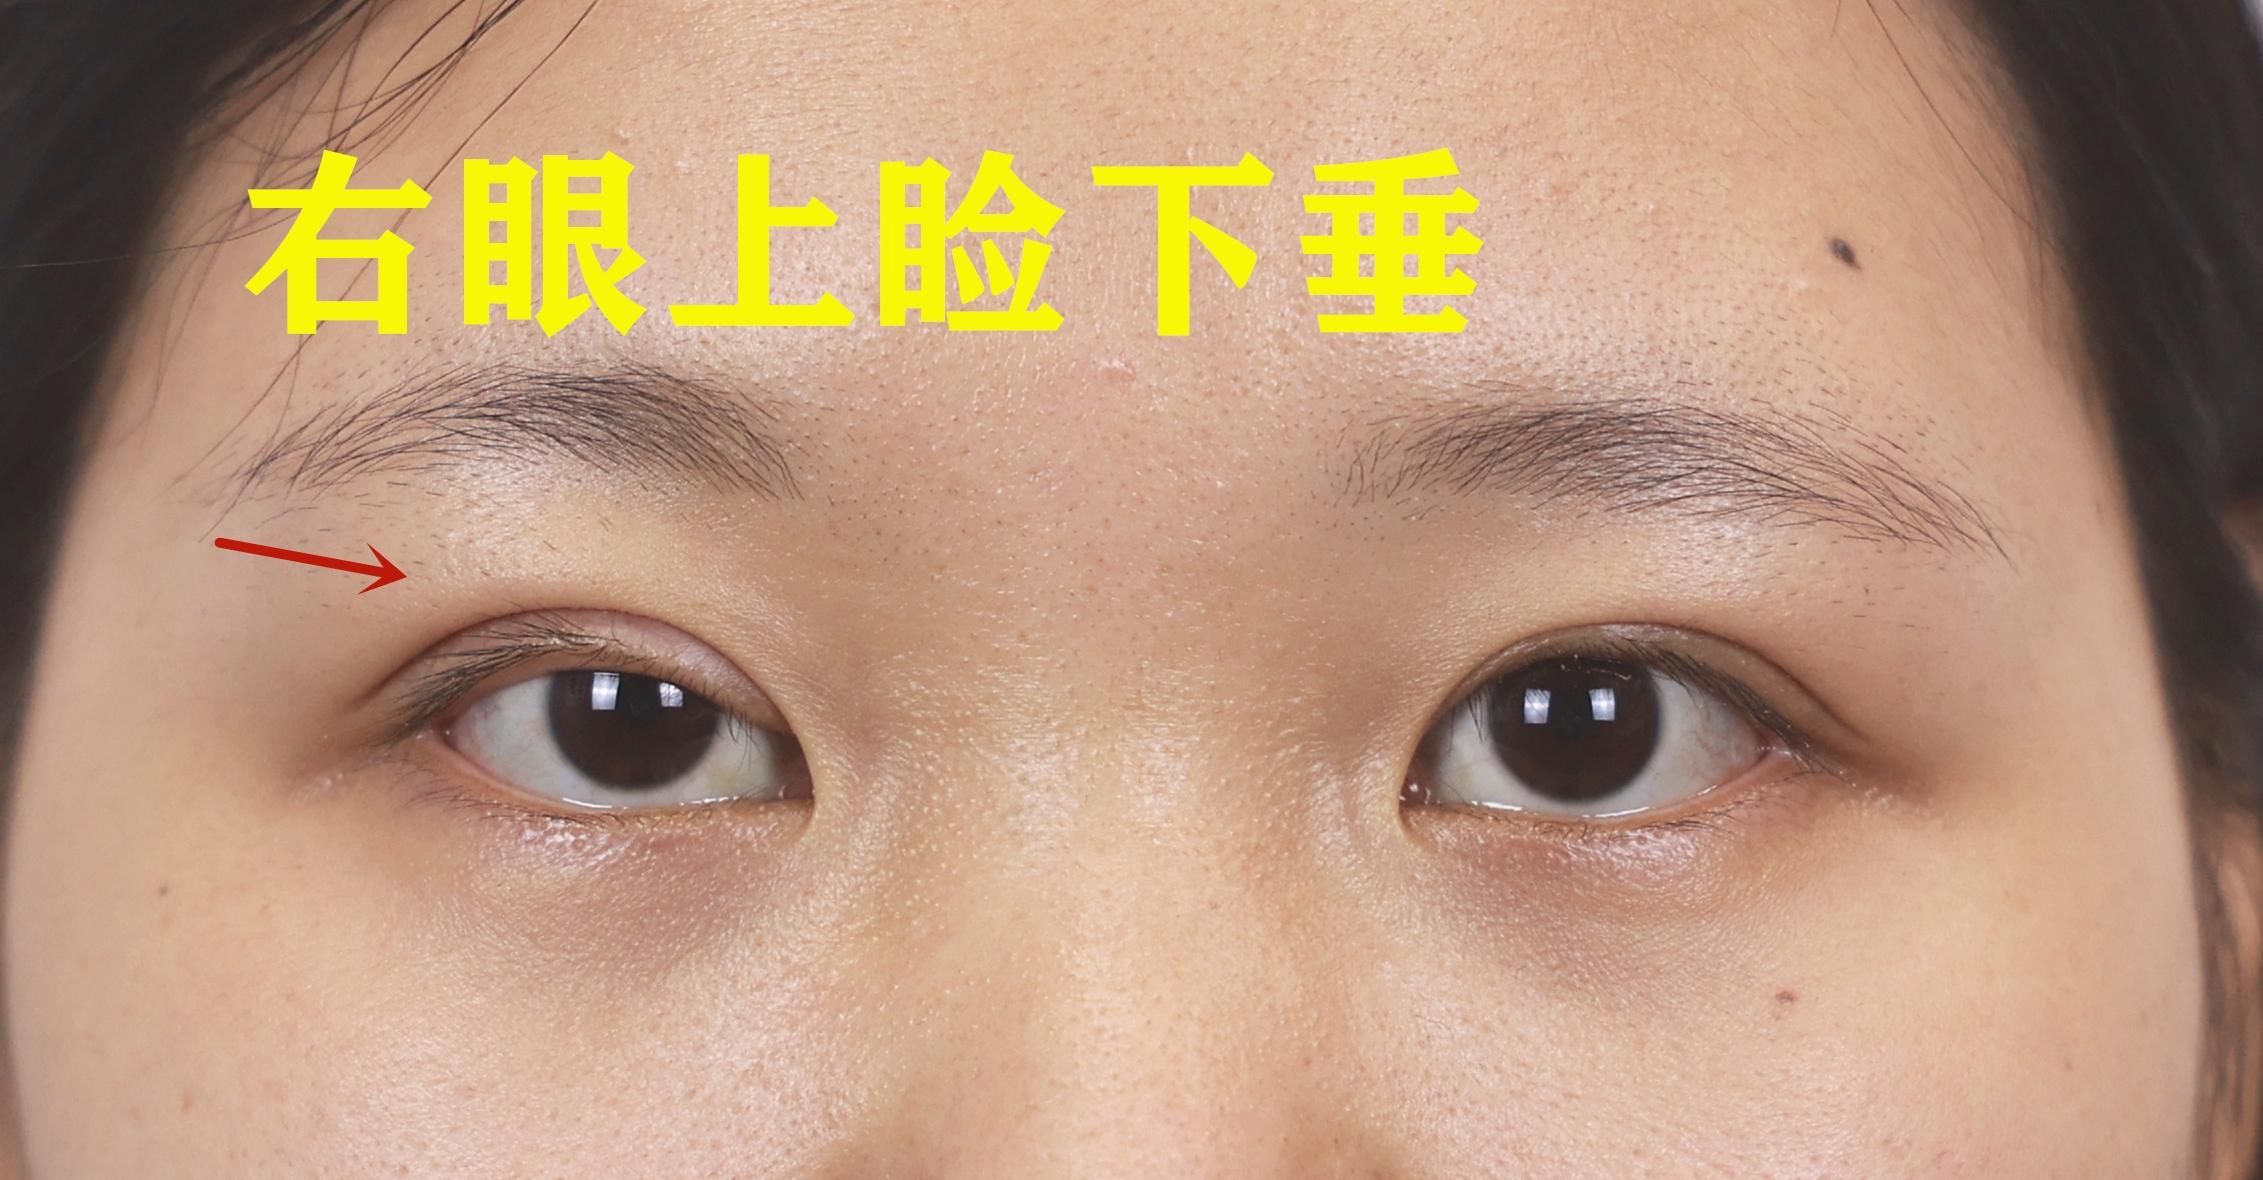 【全切双眼皮、上睑下垂矫正】上睑下垂， 左侧轻度，右侧中度（术后11个月反馈 - 知乎